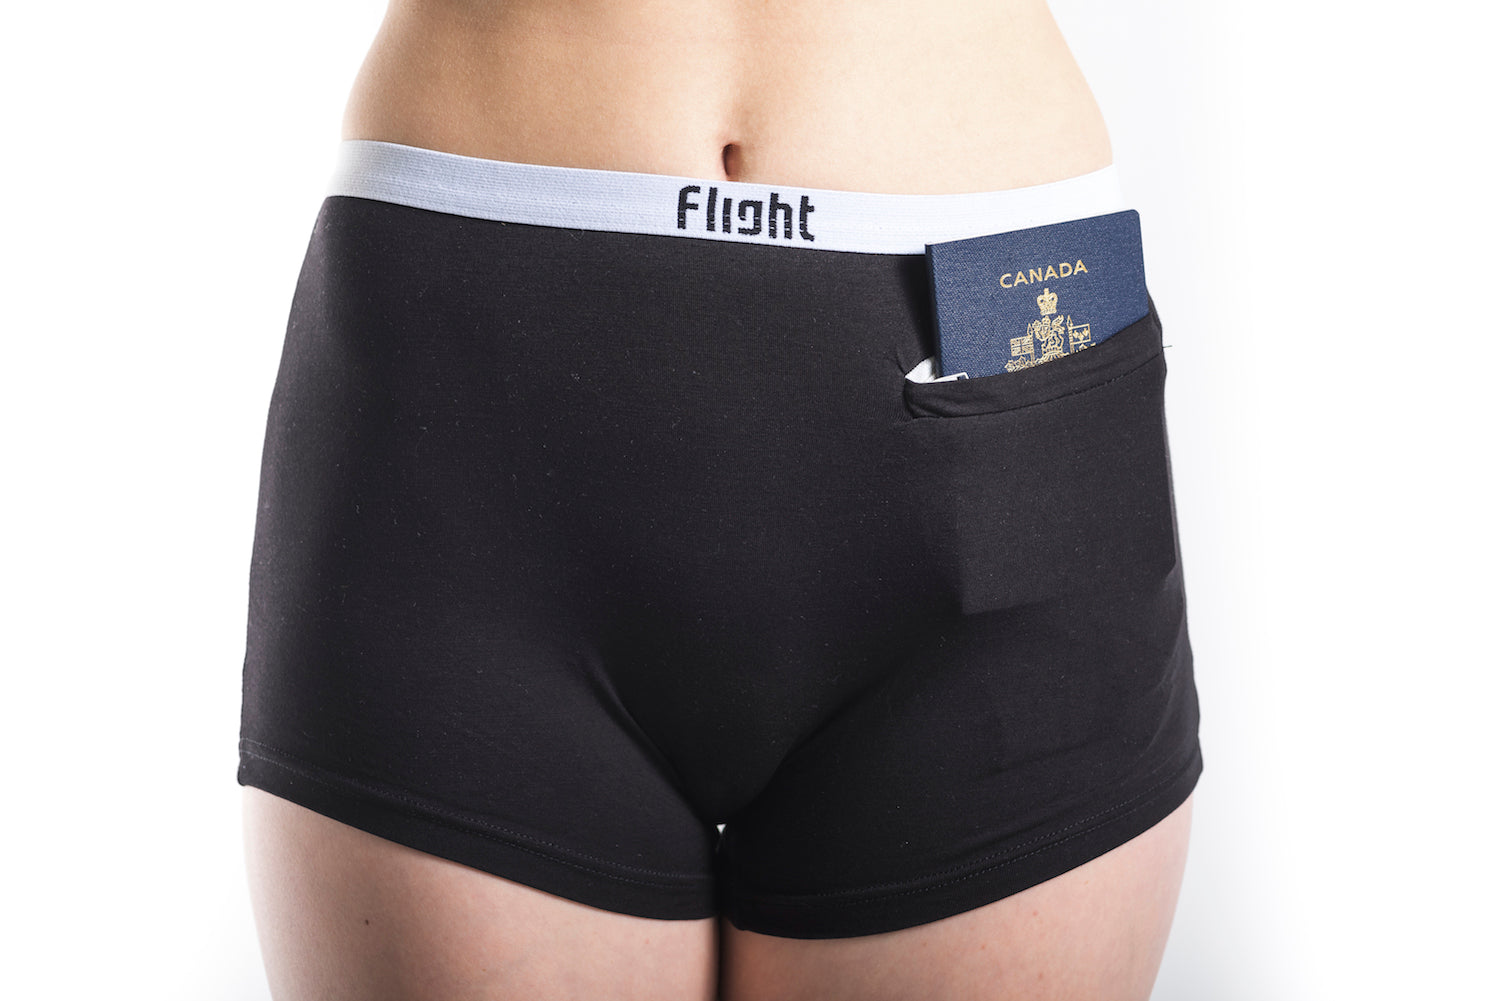 Flight Underwear - Bamboo Travel Security Underwear